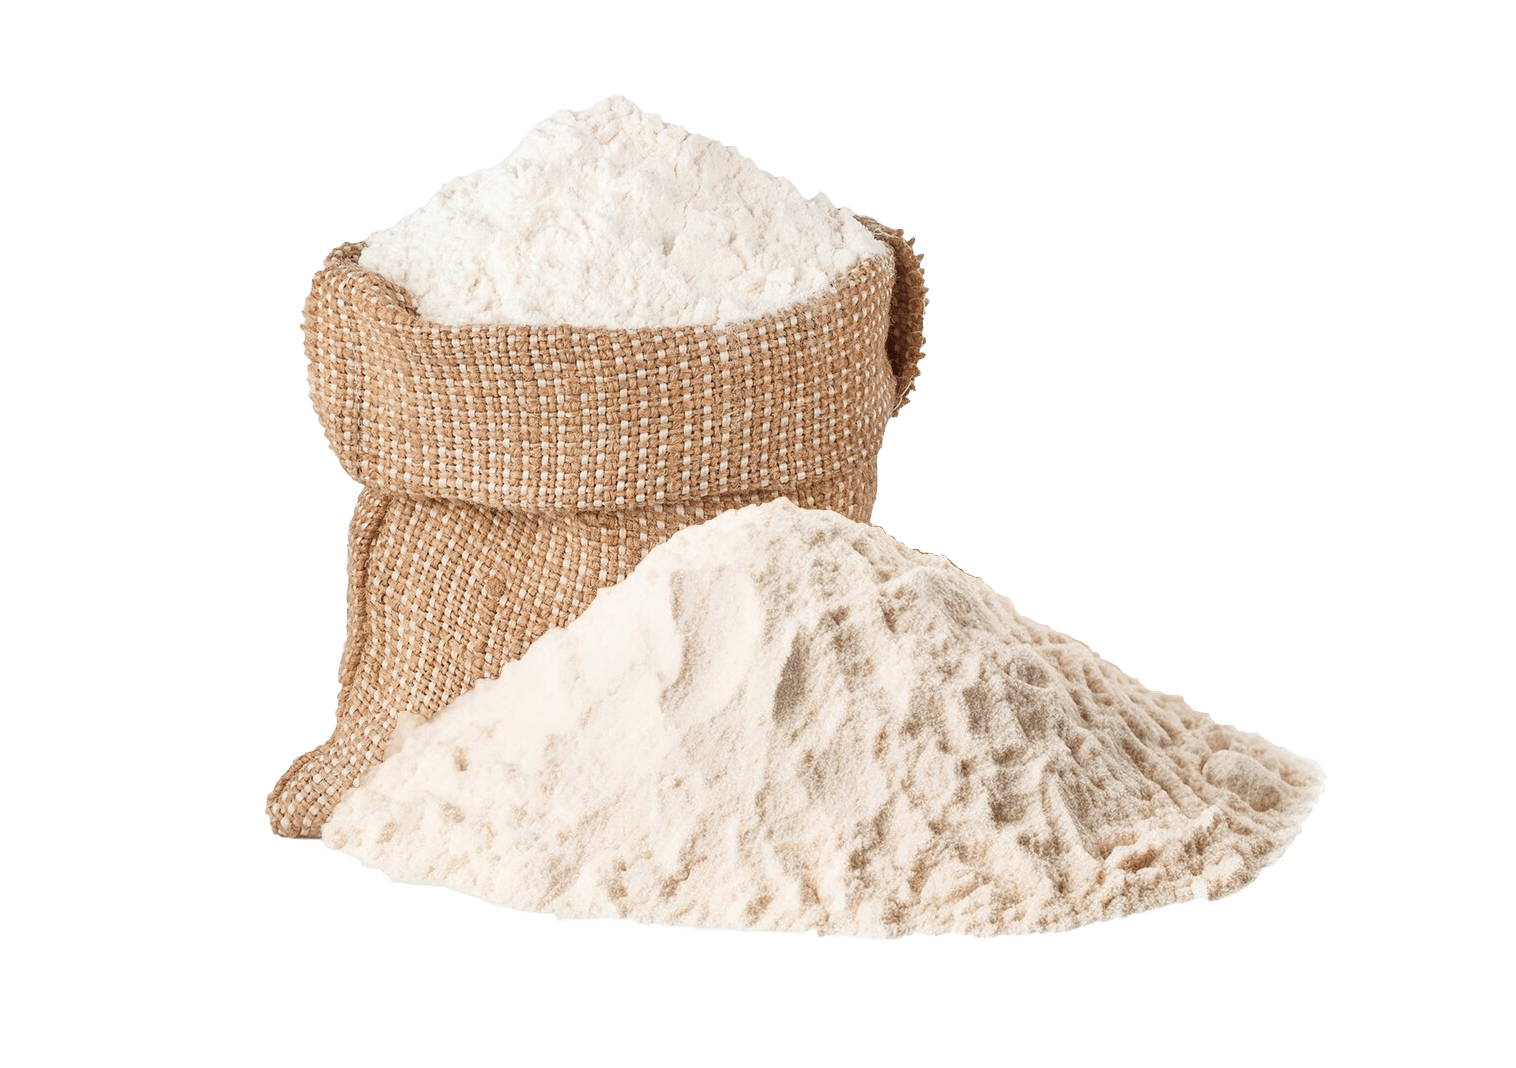 flour sack